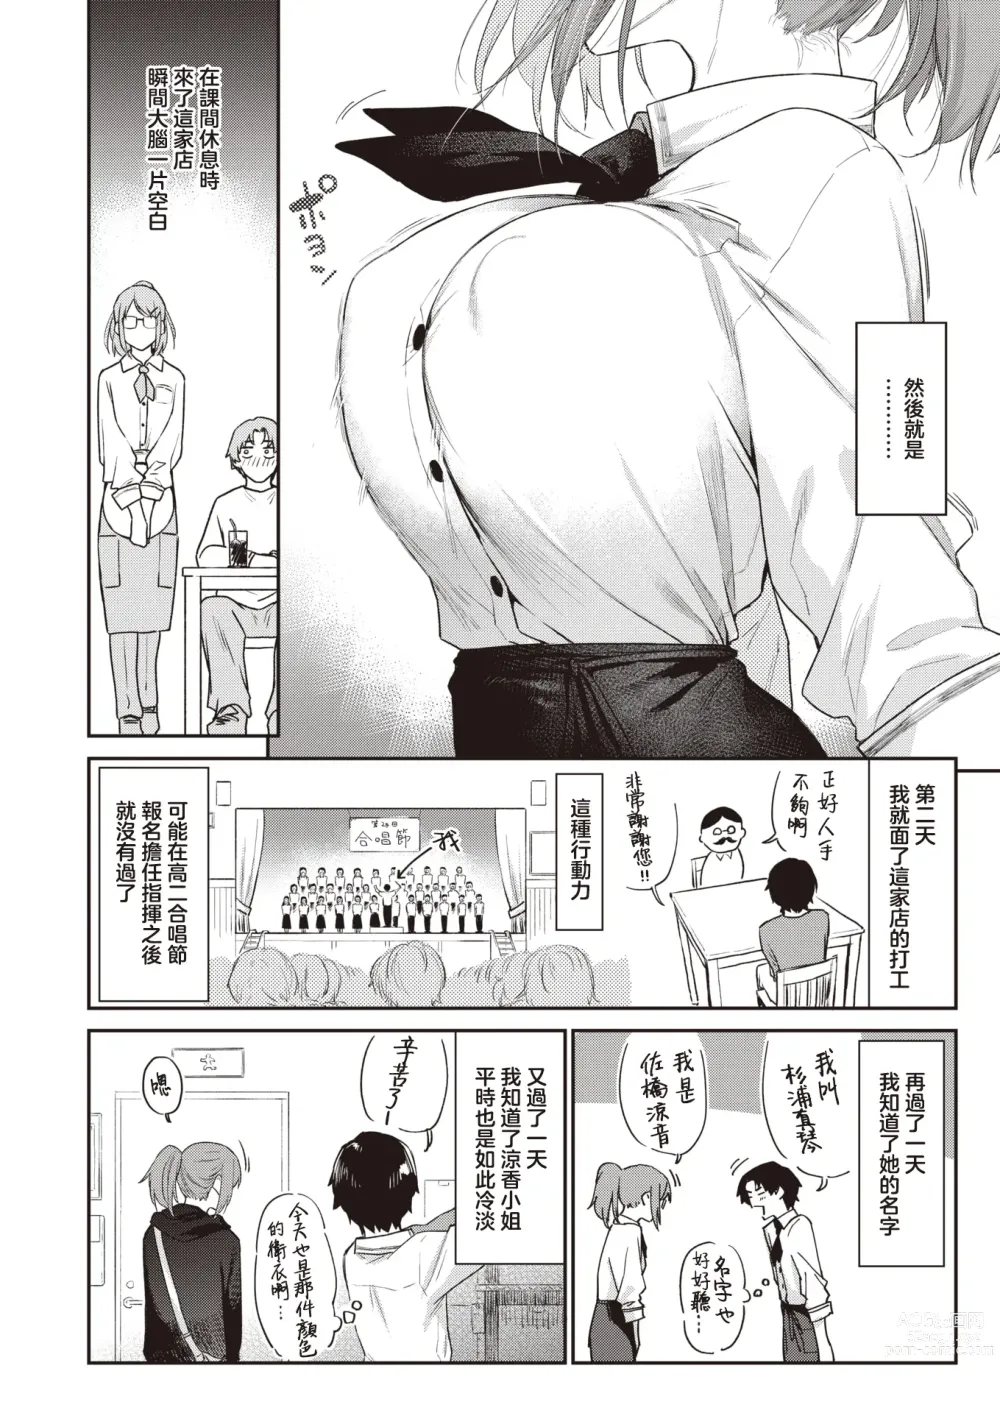 Page 5 of manga 绕道